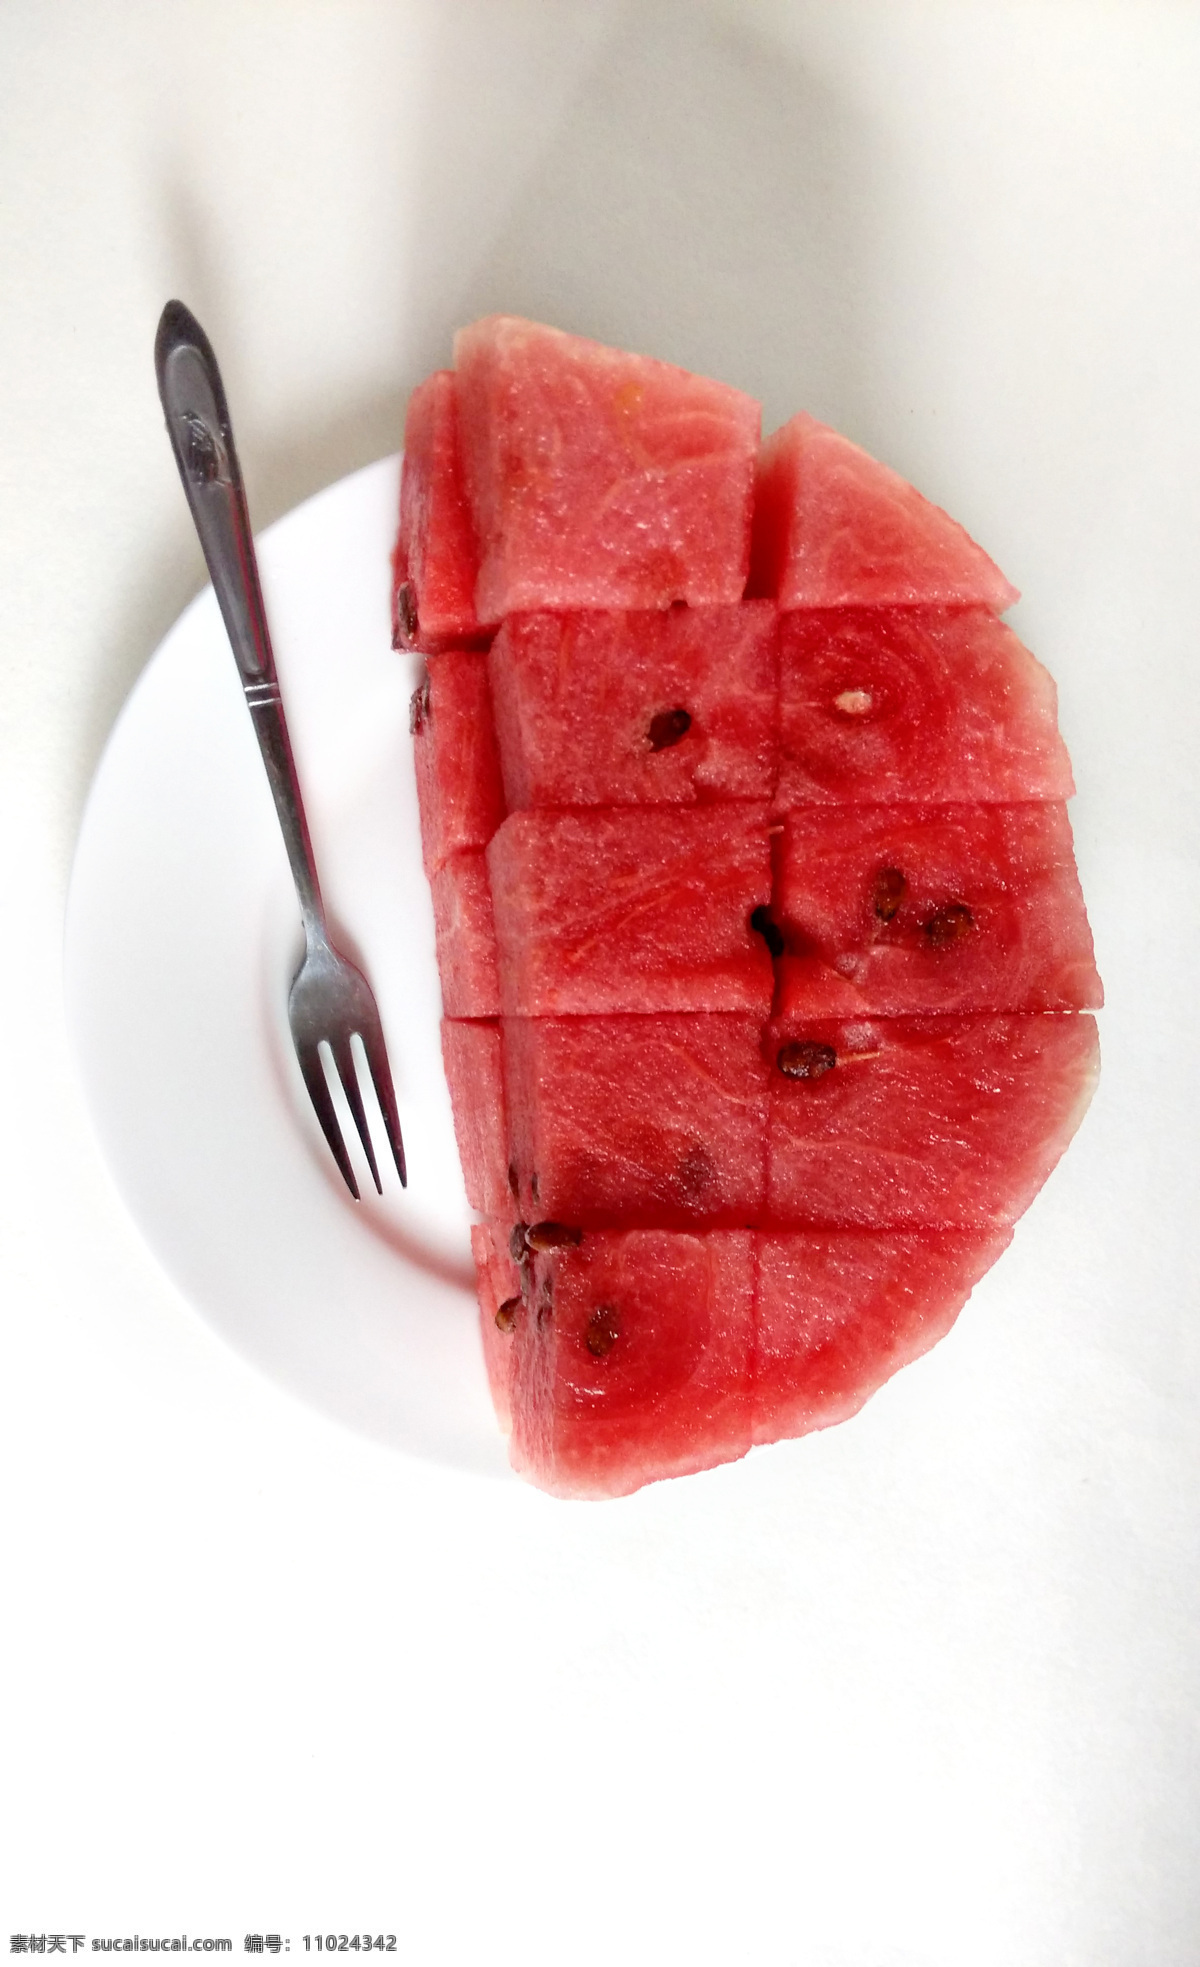 漂亮西瓜 切开的西瓜 大红西瓜 西瓜切片 西瓜素材 西瓜下载 西瓜摄影 一盘西瓜 西瓜照片 水果 饭后水果 食物 生物世界